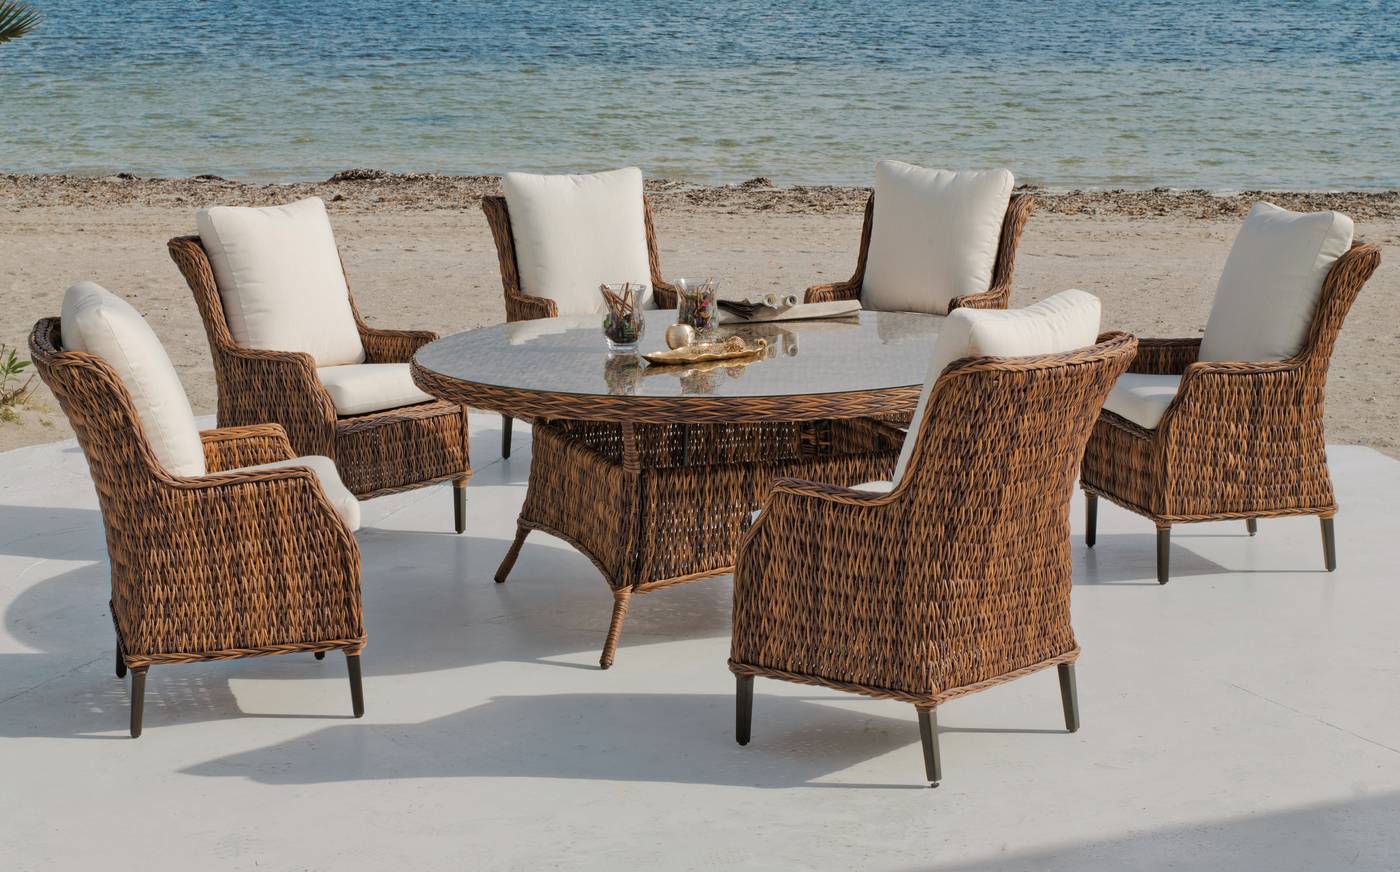 Sillón Médula Luxe Panama-30 - Sillón de comedor de médula sintética lujo, con cojines asiento y respaldo desenfundables.